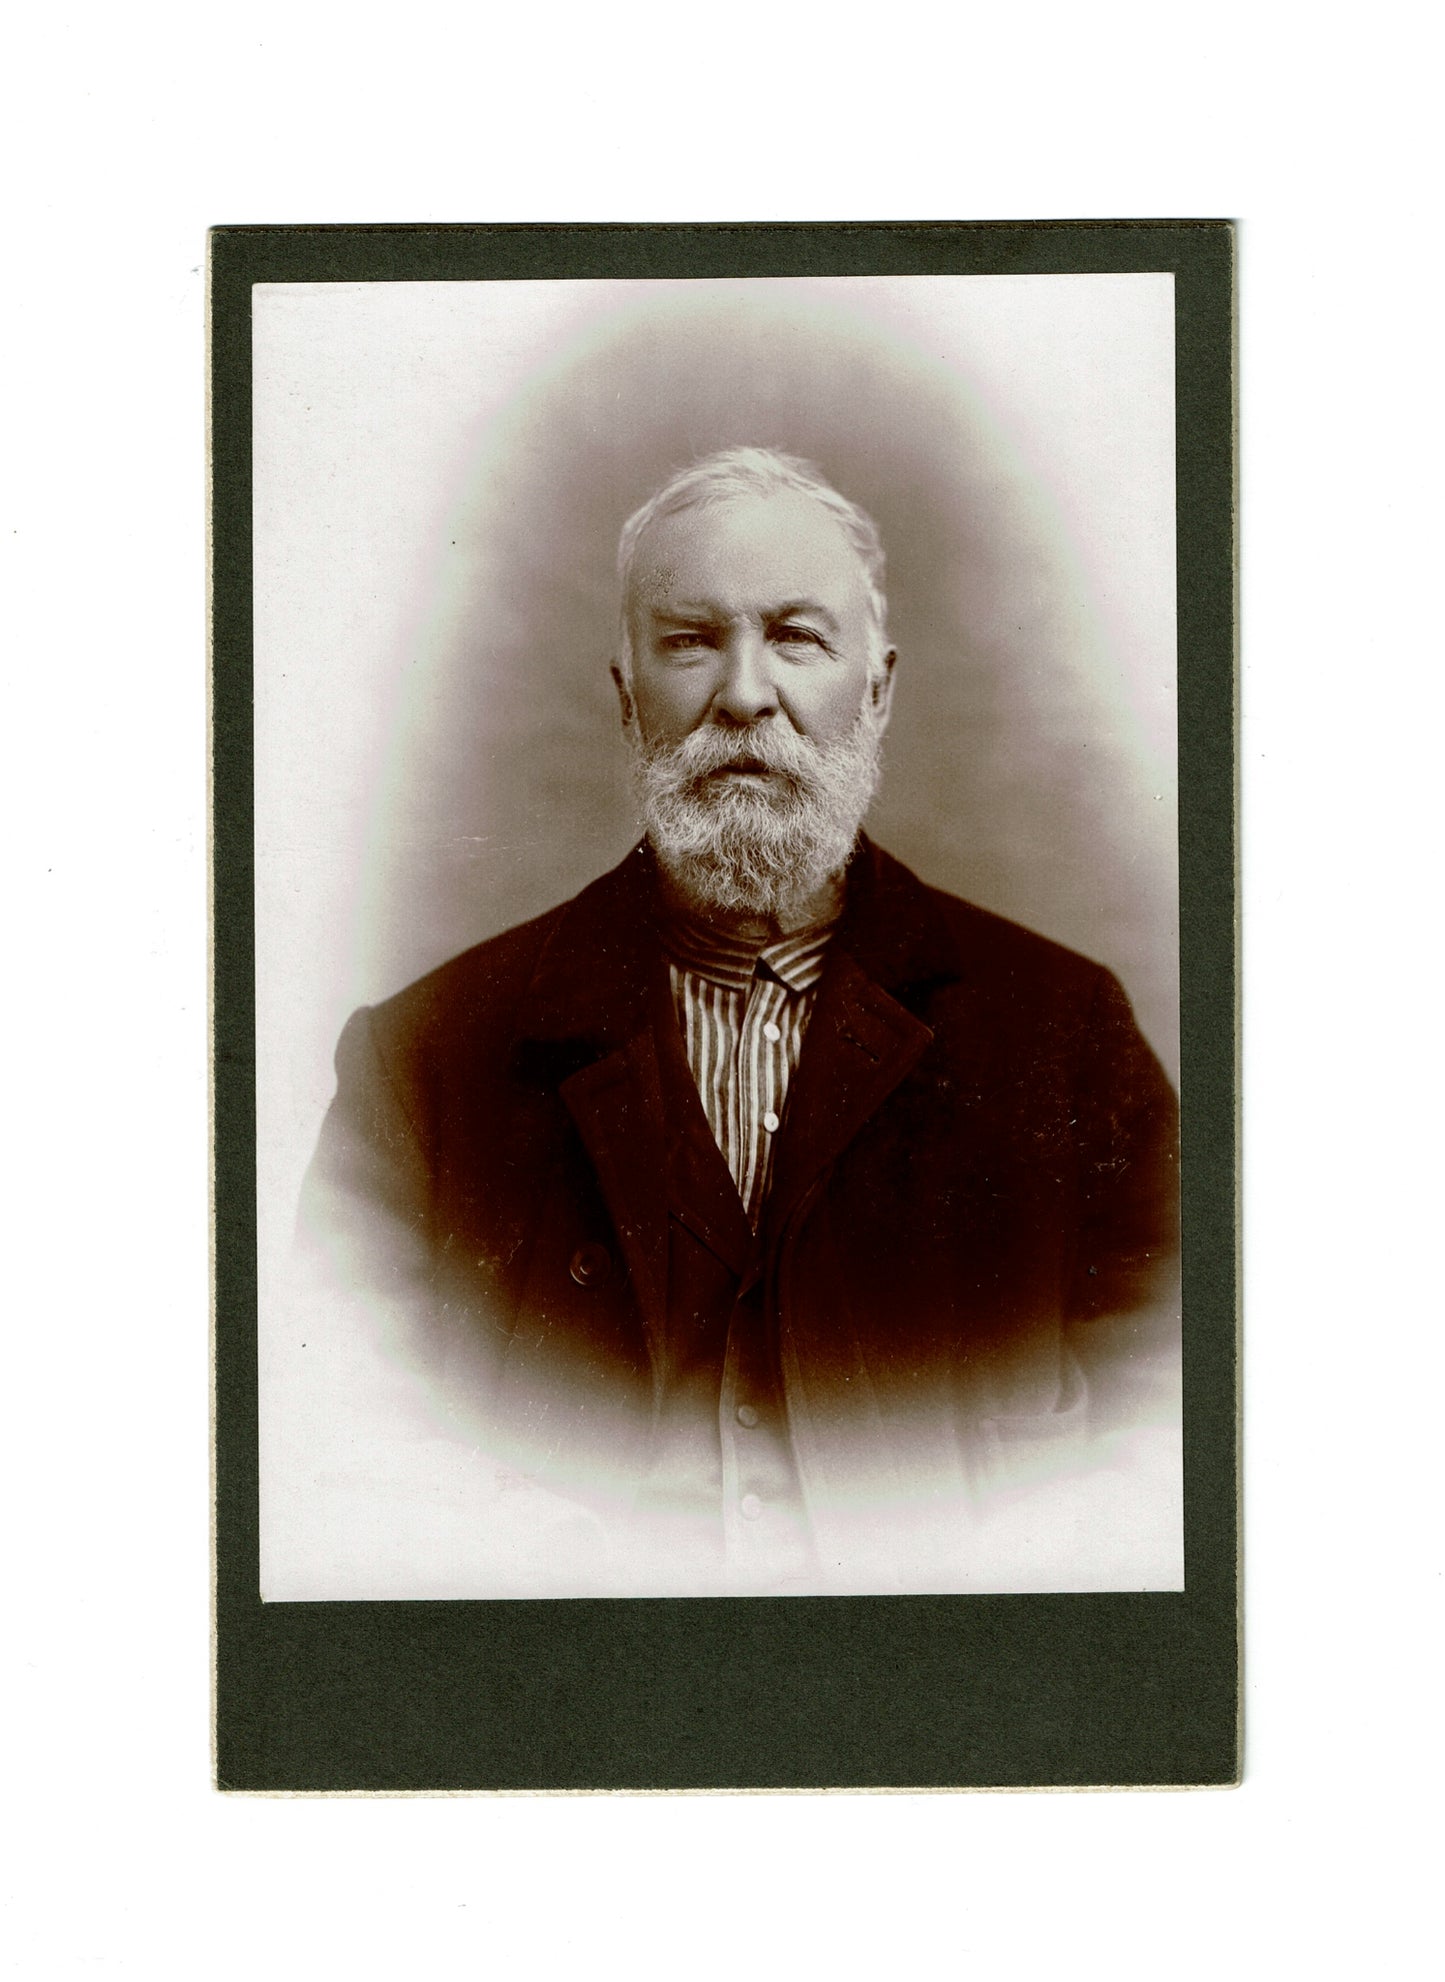 Photograph Antique Photo Cabinet Card Gentleman Portrait Newark New Jersey - Dahlströms Fine Art